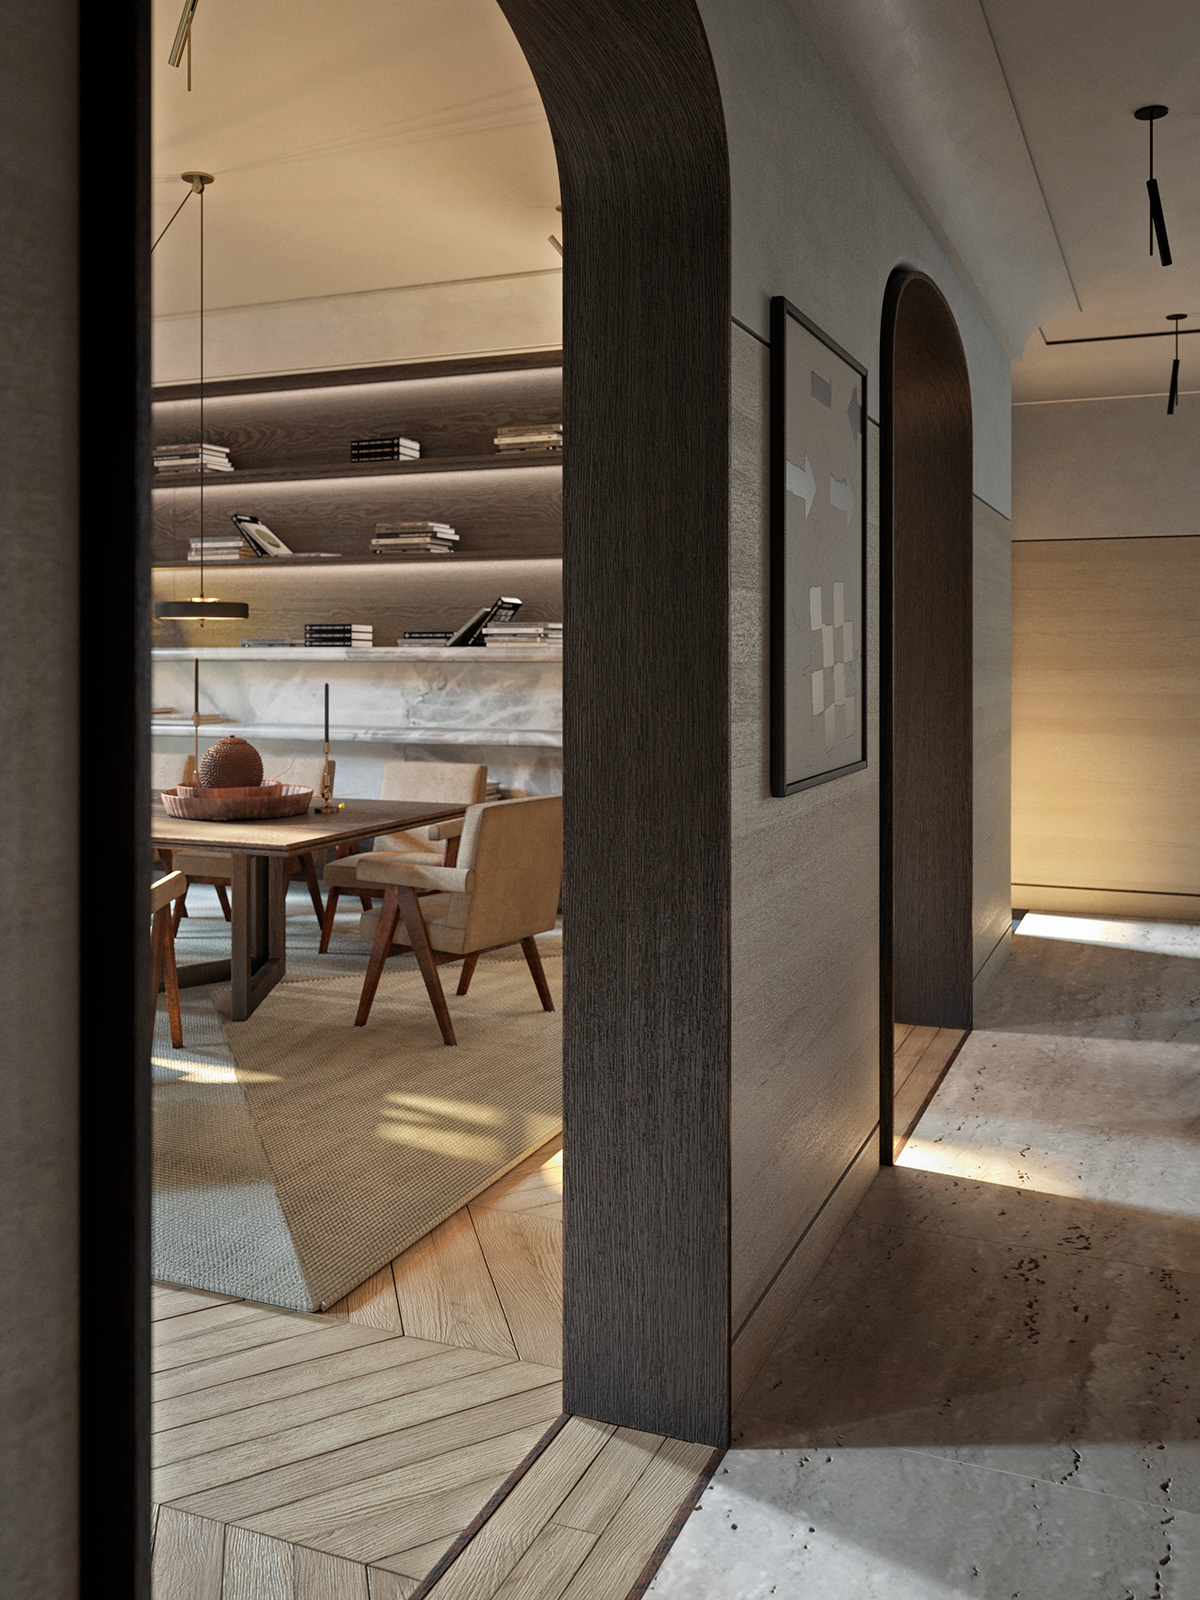 apartment cozyinterior design interiordesign livingroom Paris